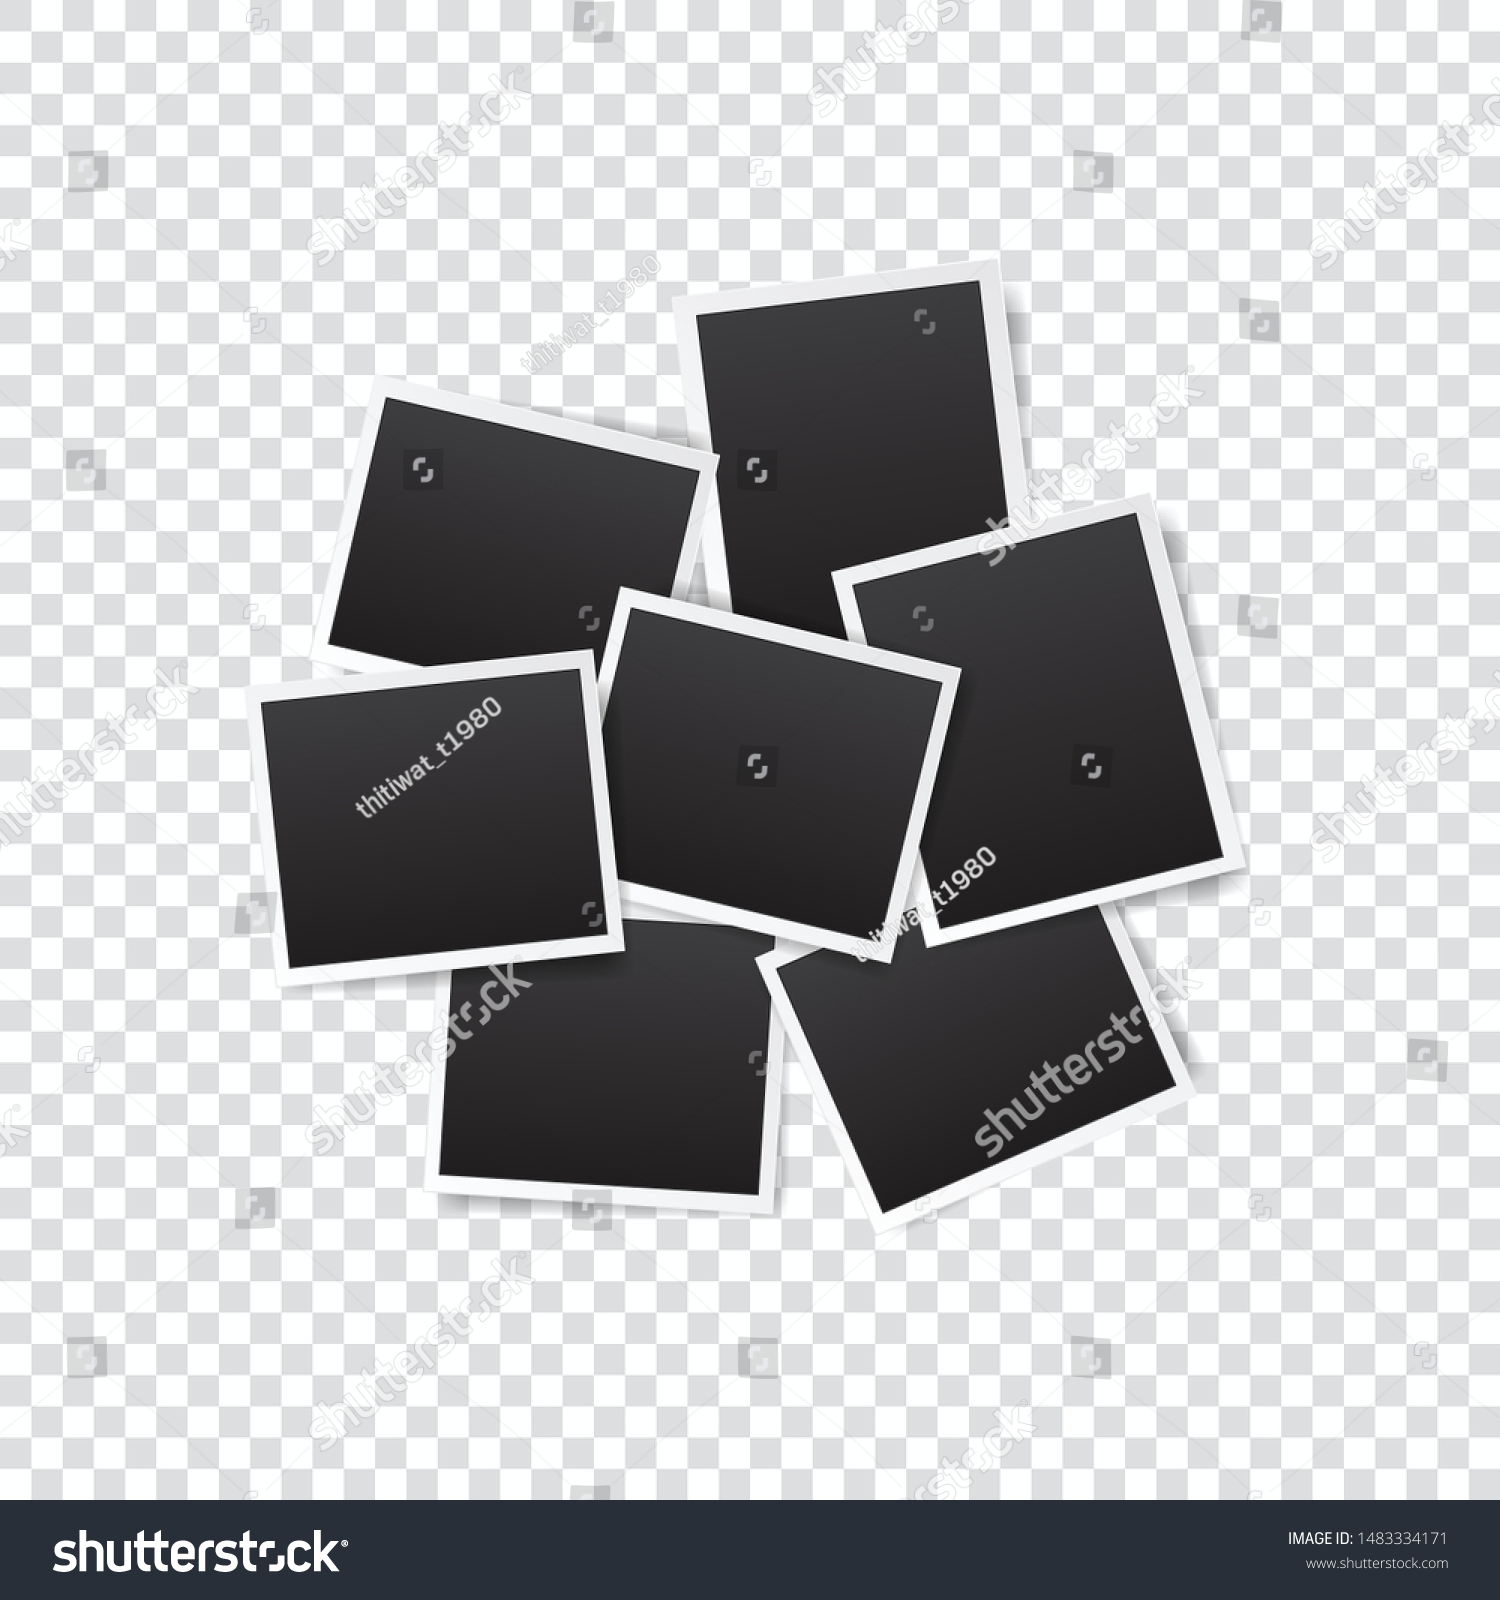 透明な背景に白い枠と黒い長方形エレメントを持つ空のフォトフレームのセット デザイン用のテンプレートまたはモックアップデコレーション のベクター画像素材 ロイヤリティフリー